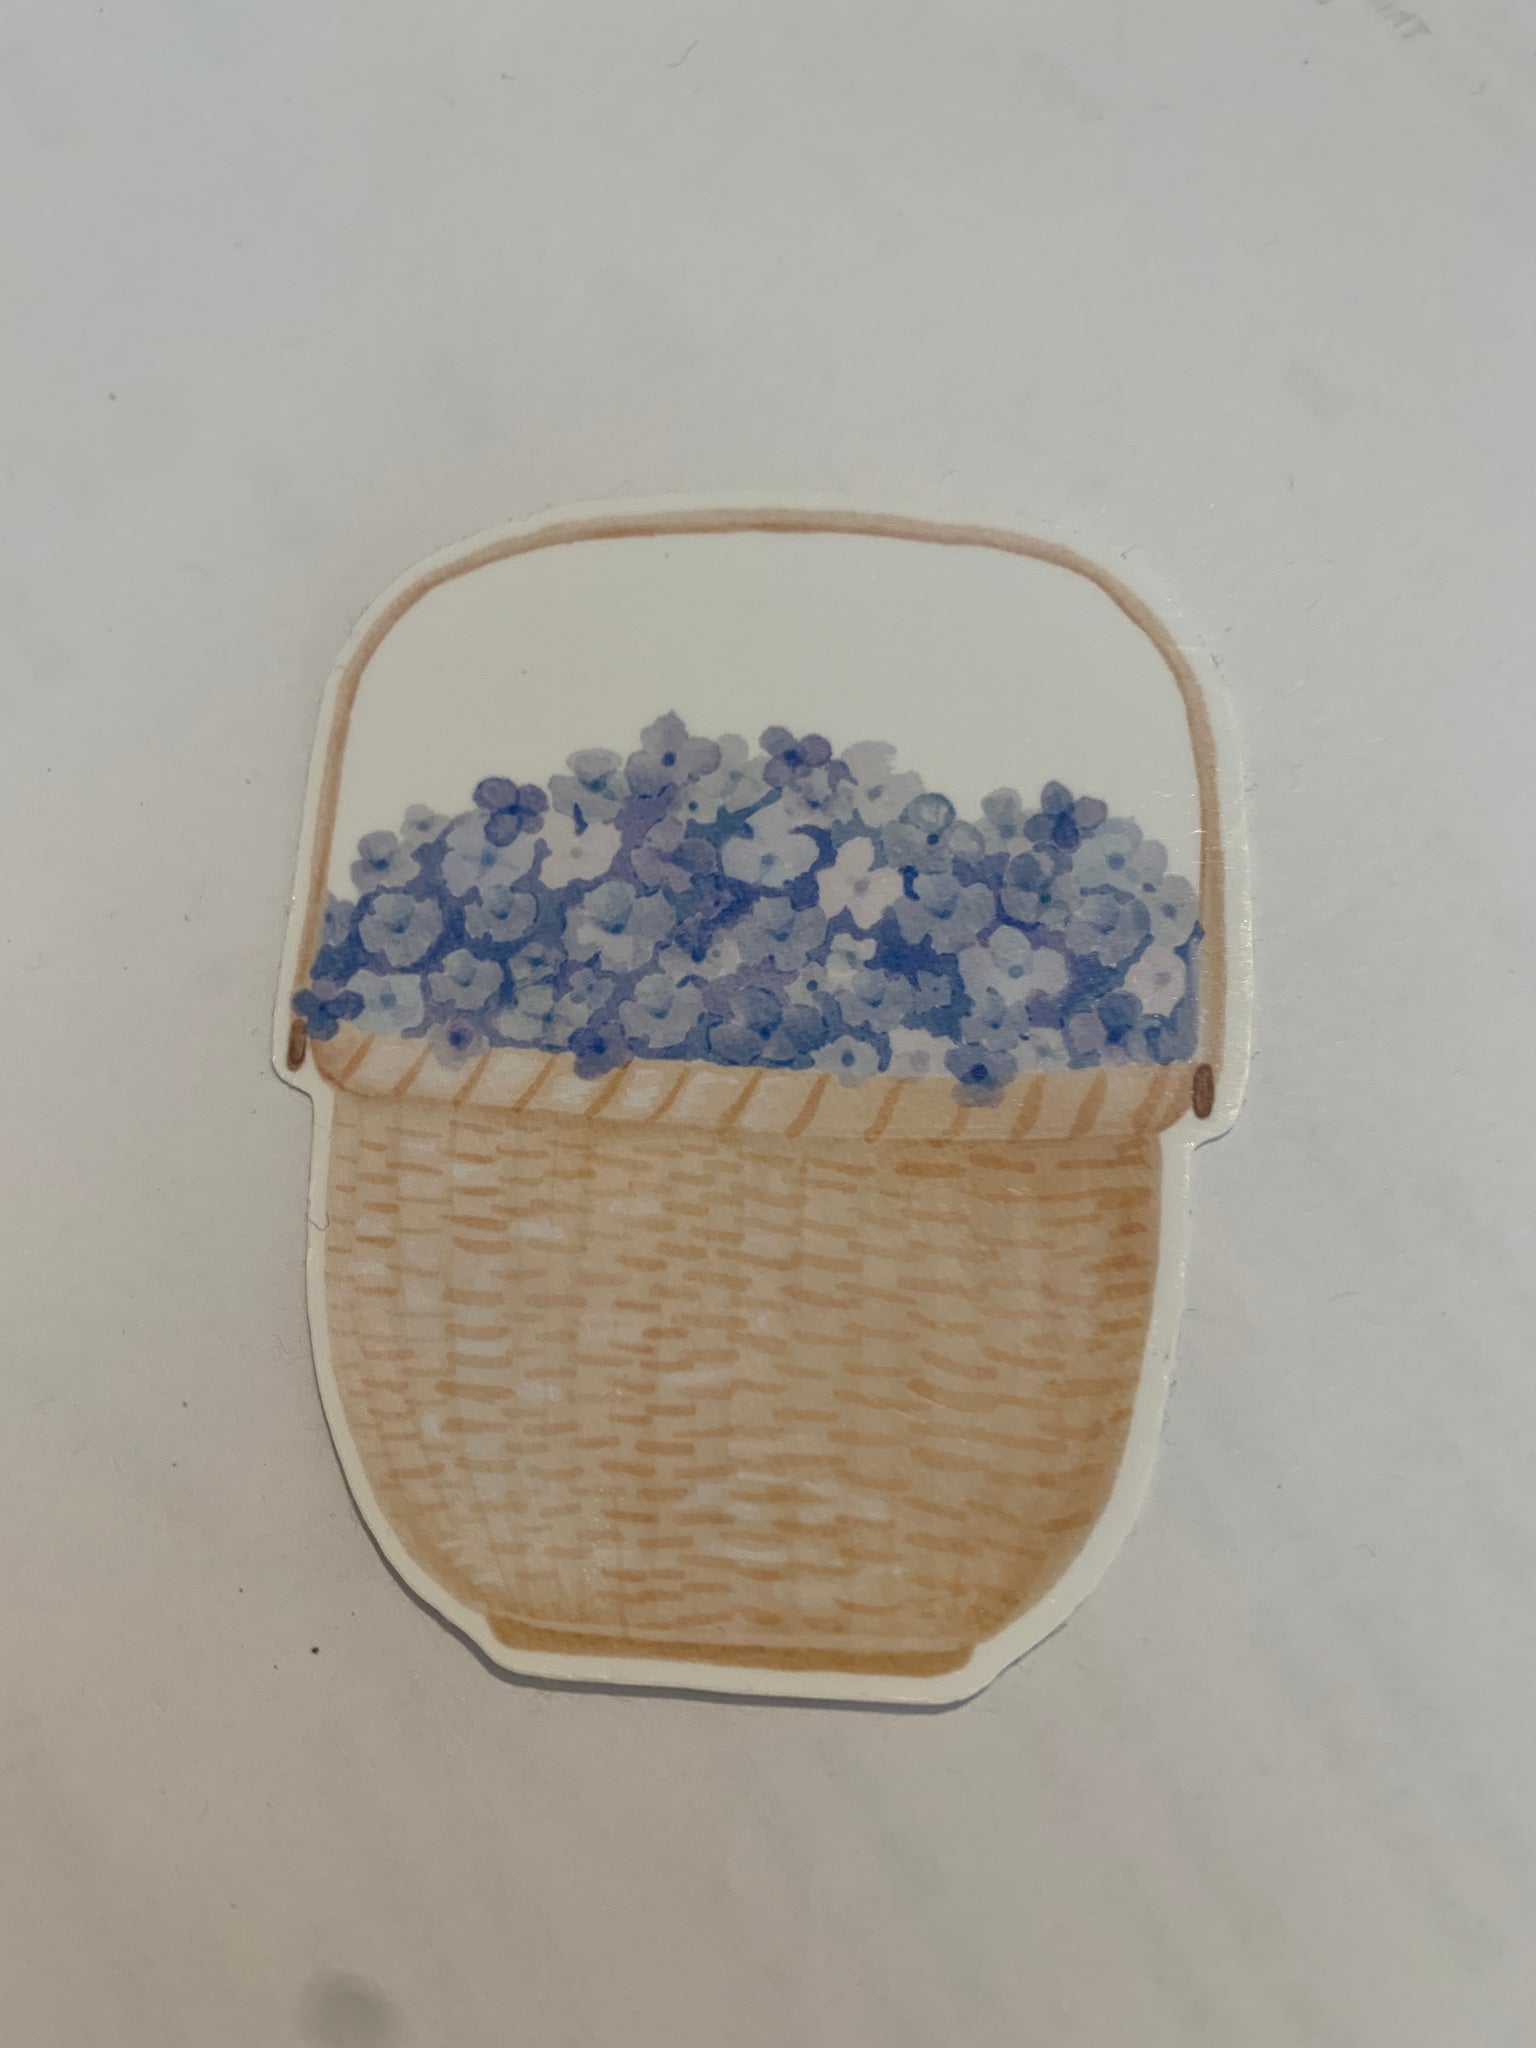 Hydrangea basket  sticker